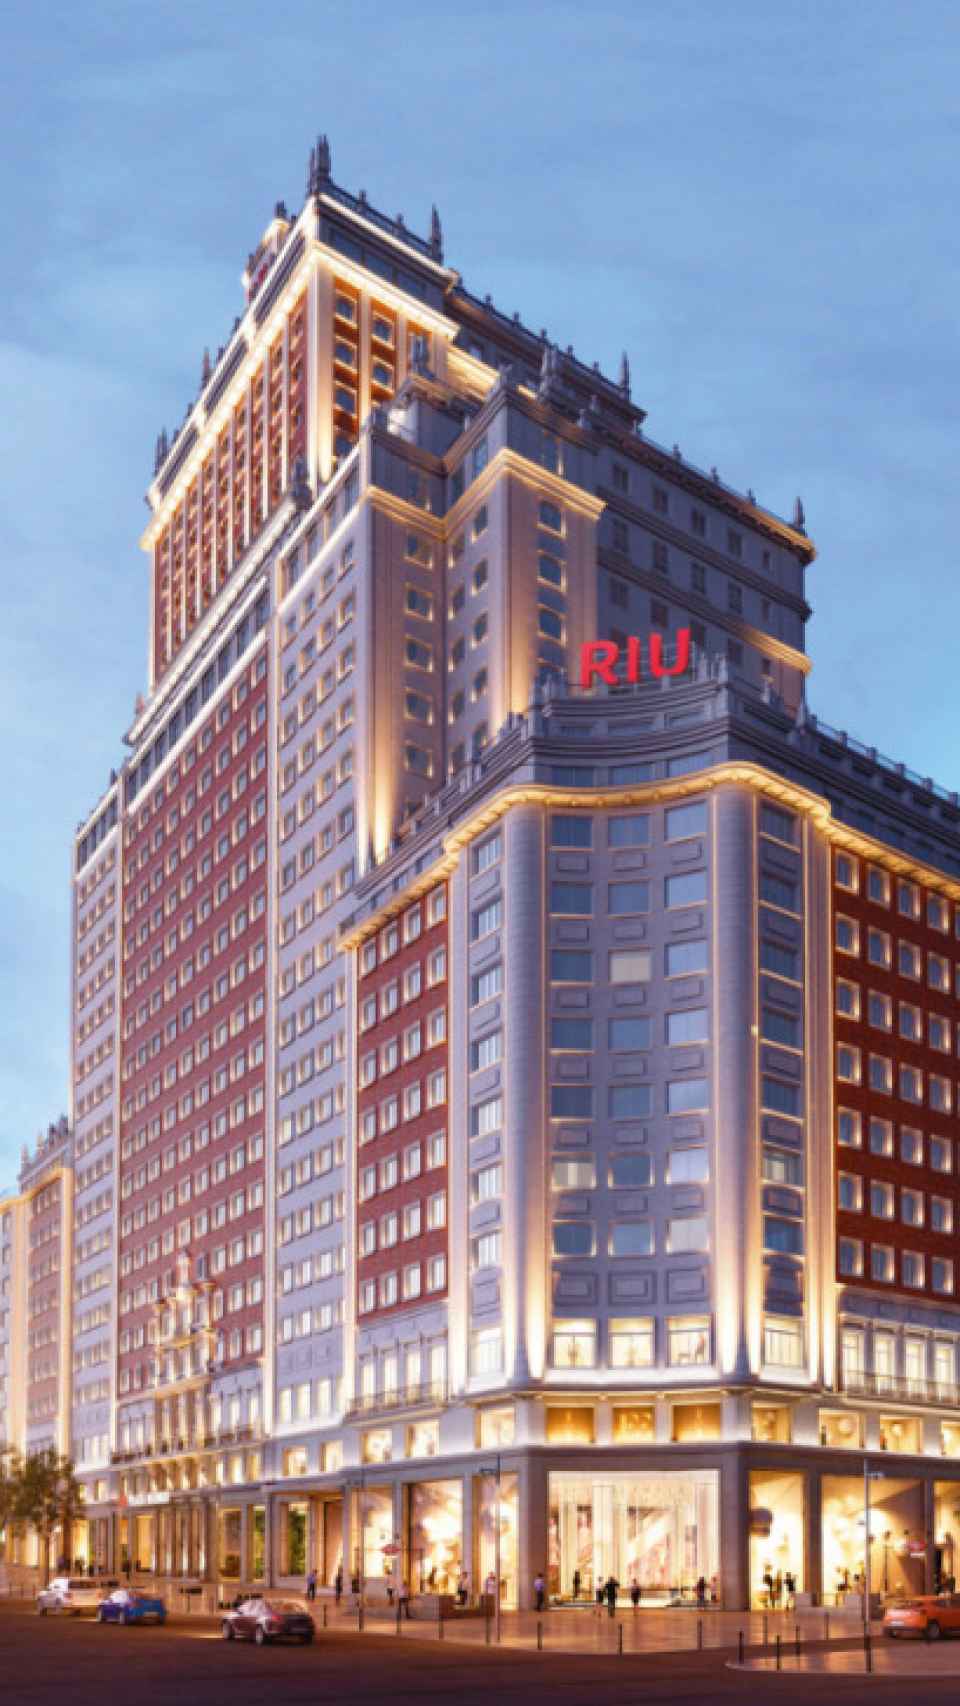 Recreación facilitada por la cadena hotelera RIU que muestra la fachada remodelada.